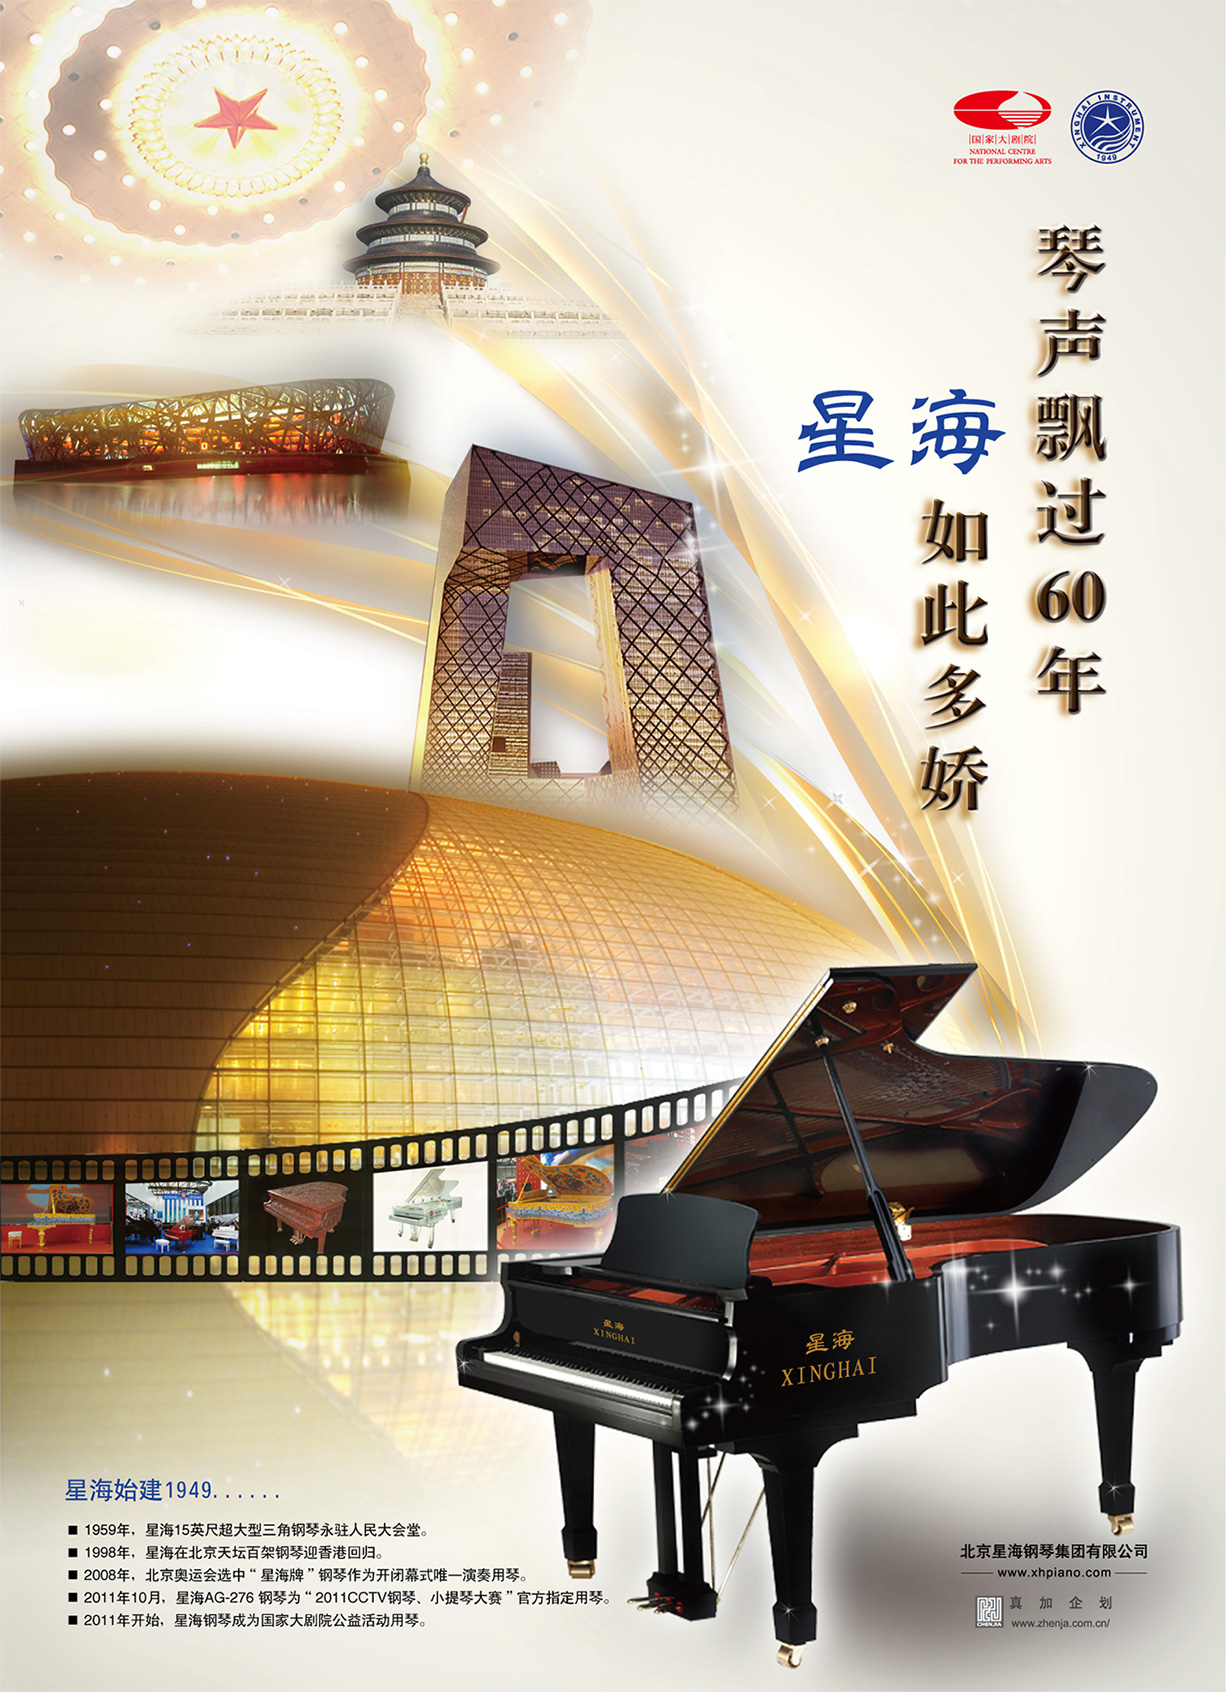 星海钢琴是中国有悠久历史的钢琴公司